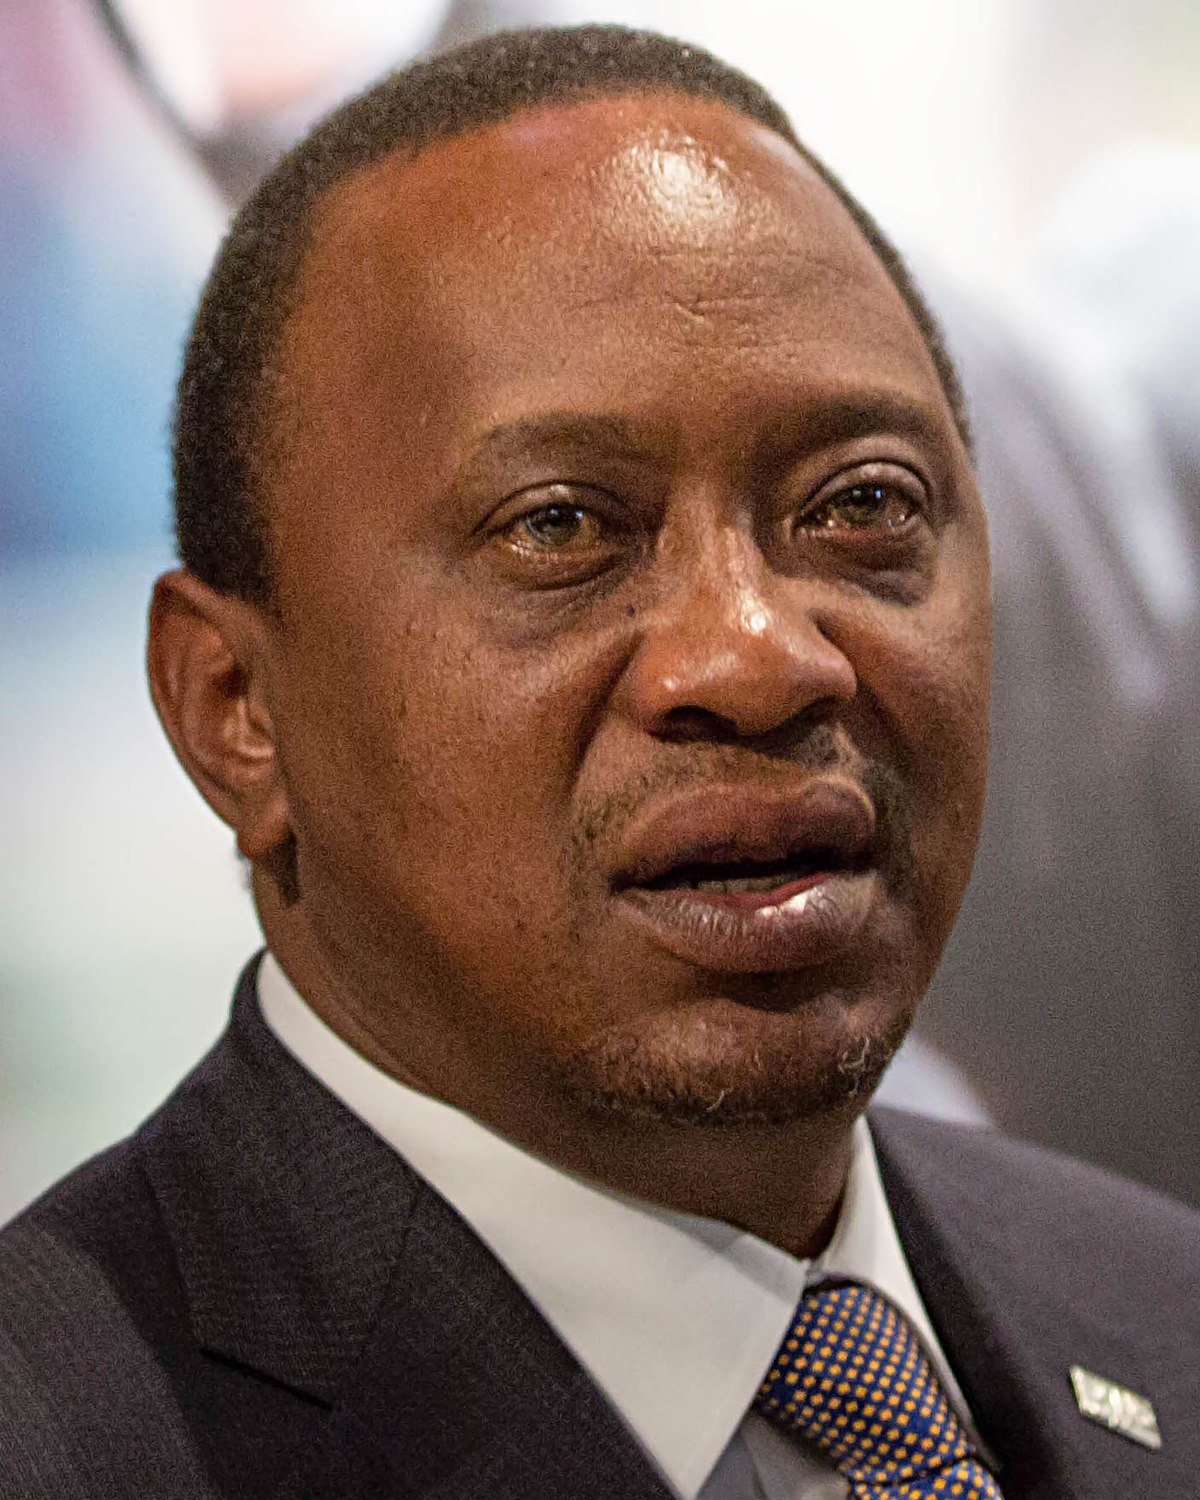 Le président kenyan Uhuru Kenyatta prête serment pour un second mandat